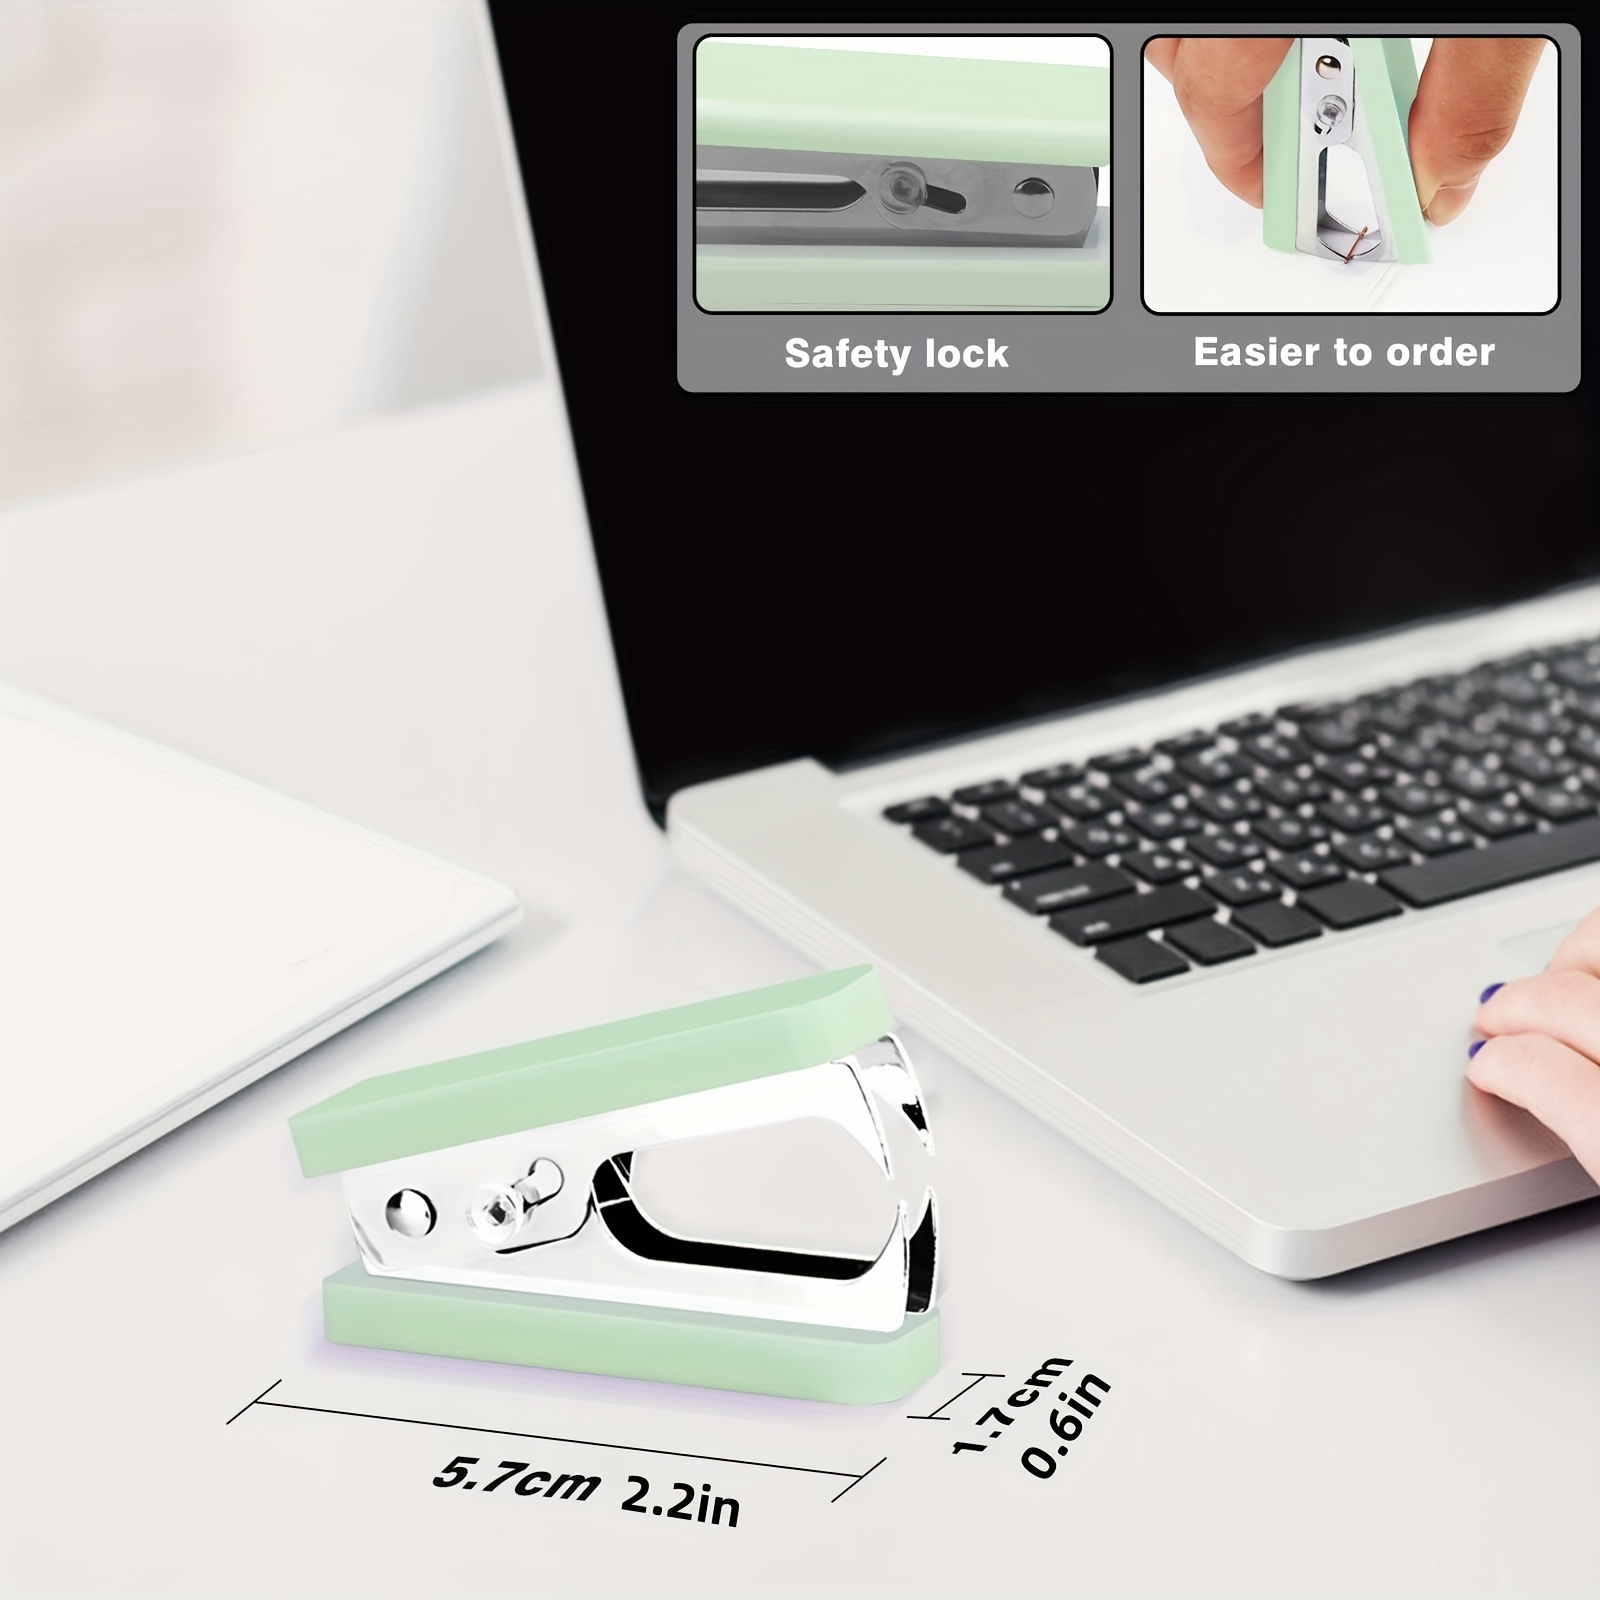 Desk Accessories Kit Green Stapler And Tape Dispenser Set, Acrylic